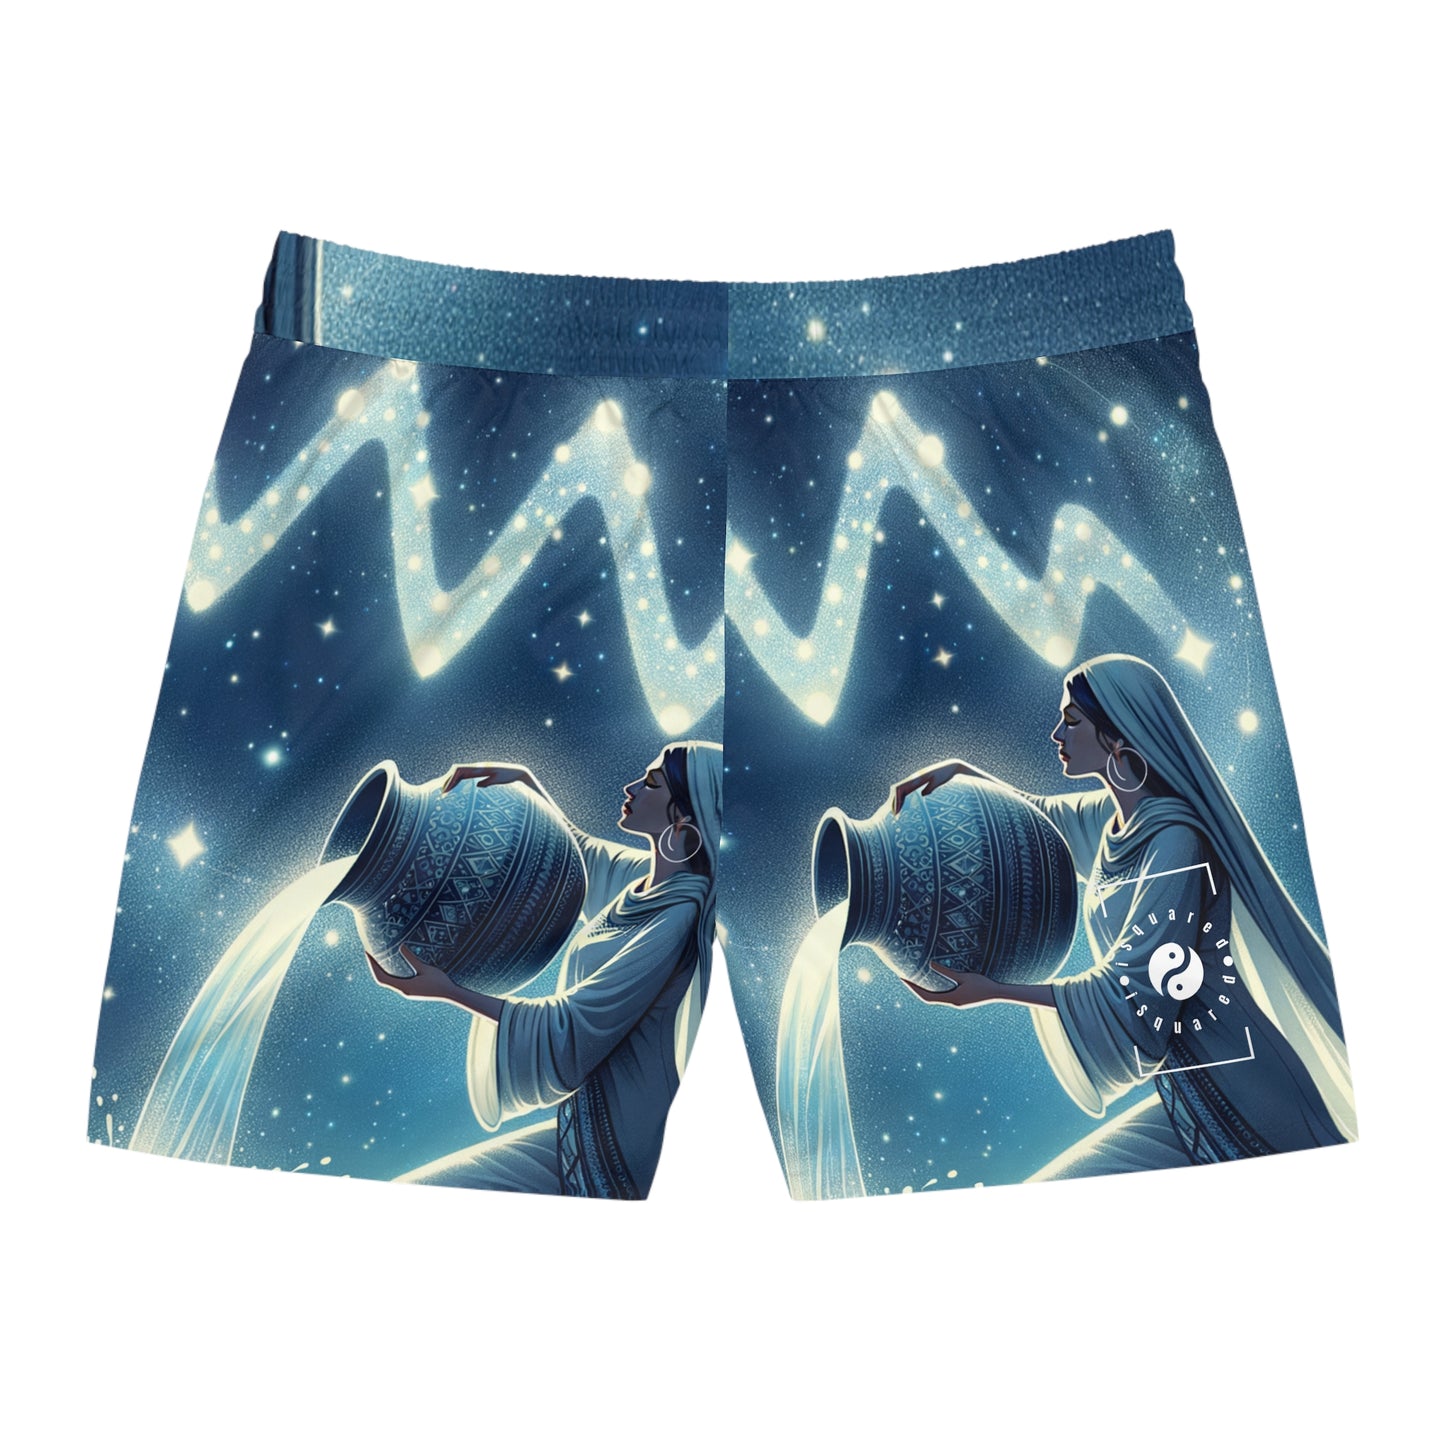 Aquarius Flow - Swim Shorts (Mid-Length) for Men